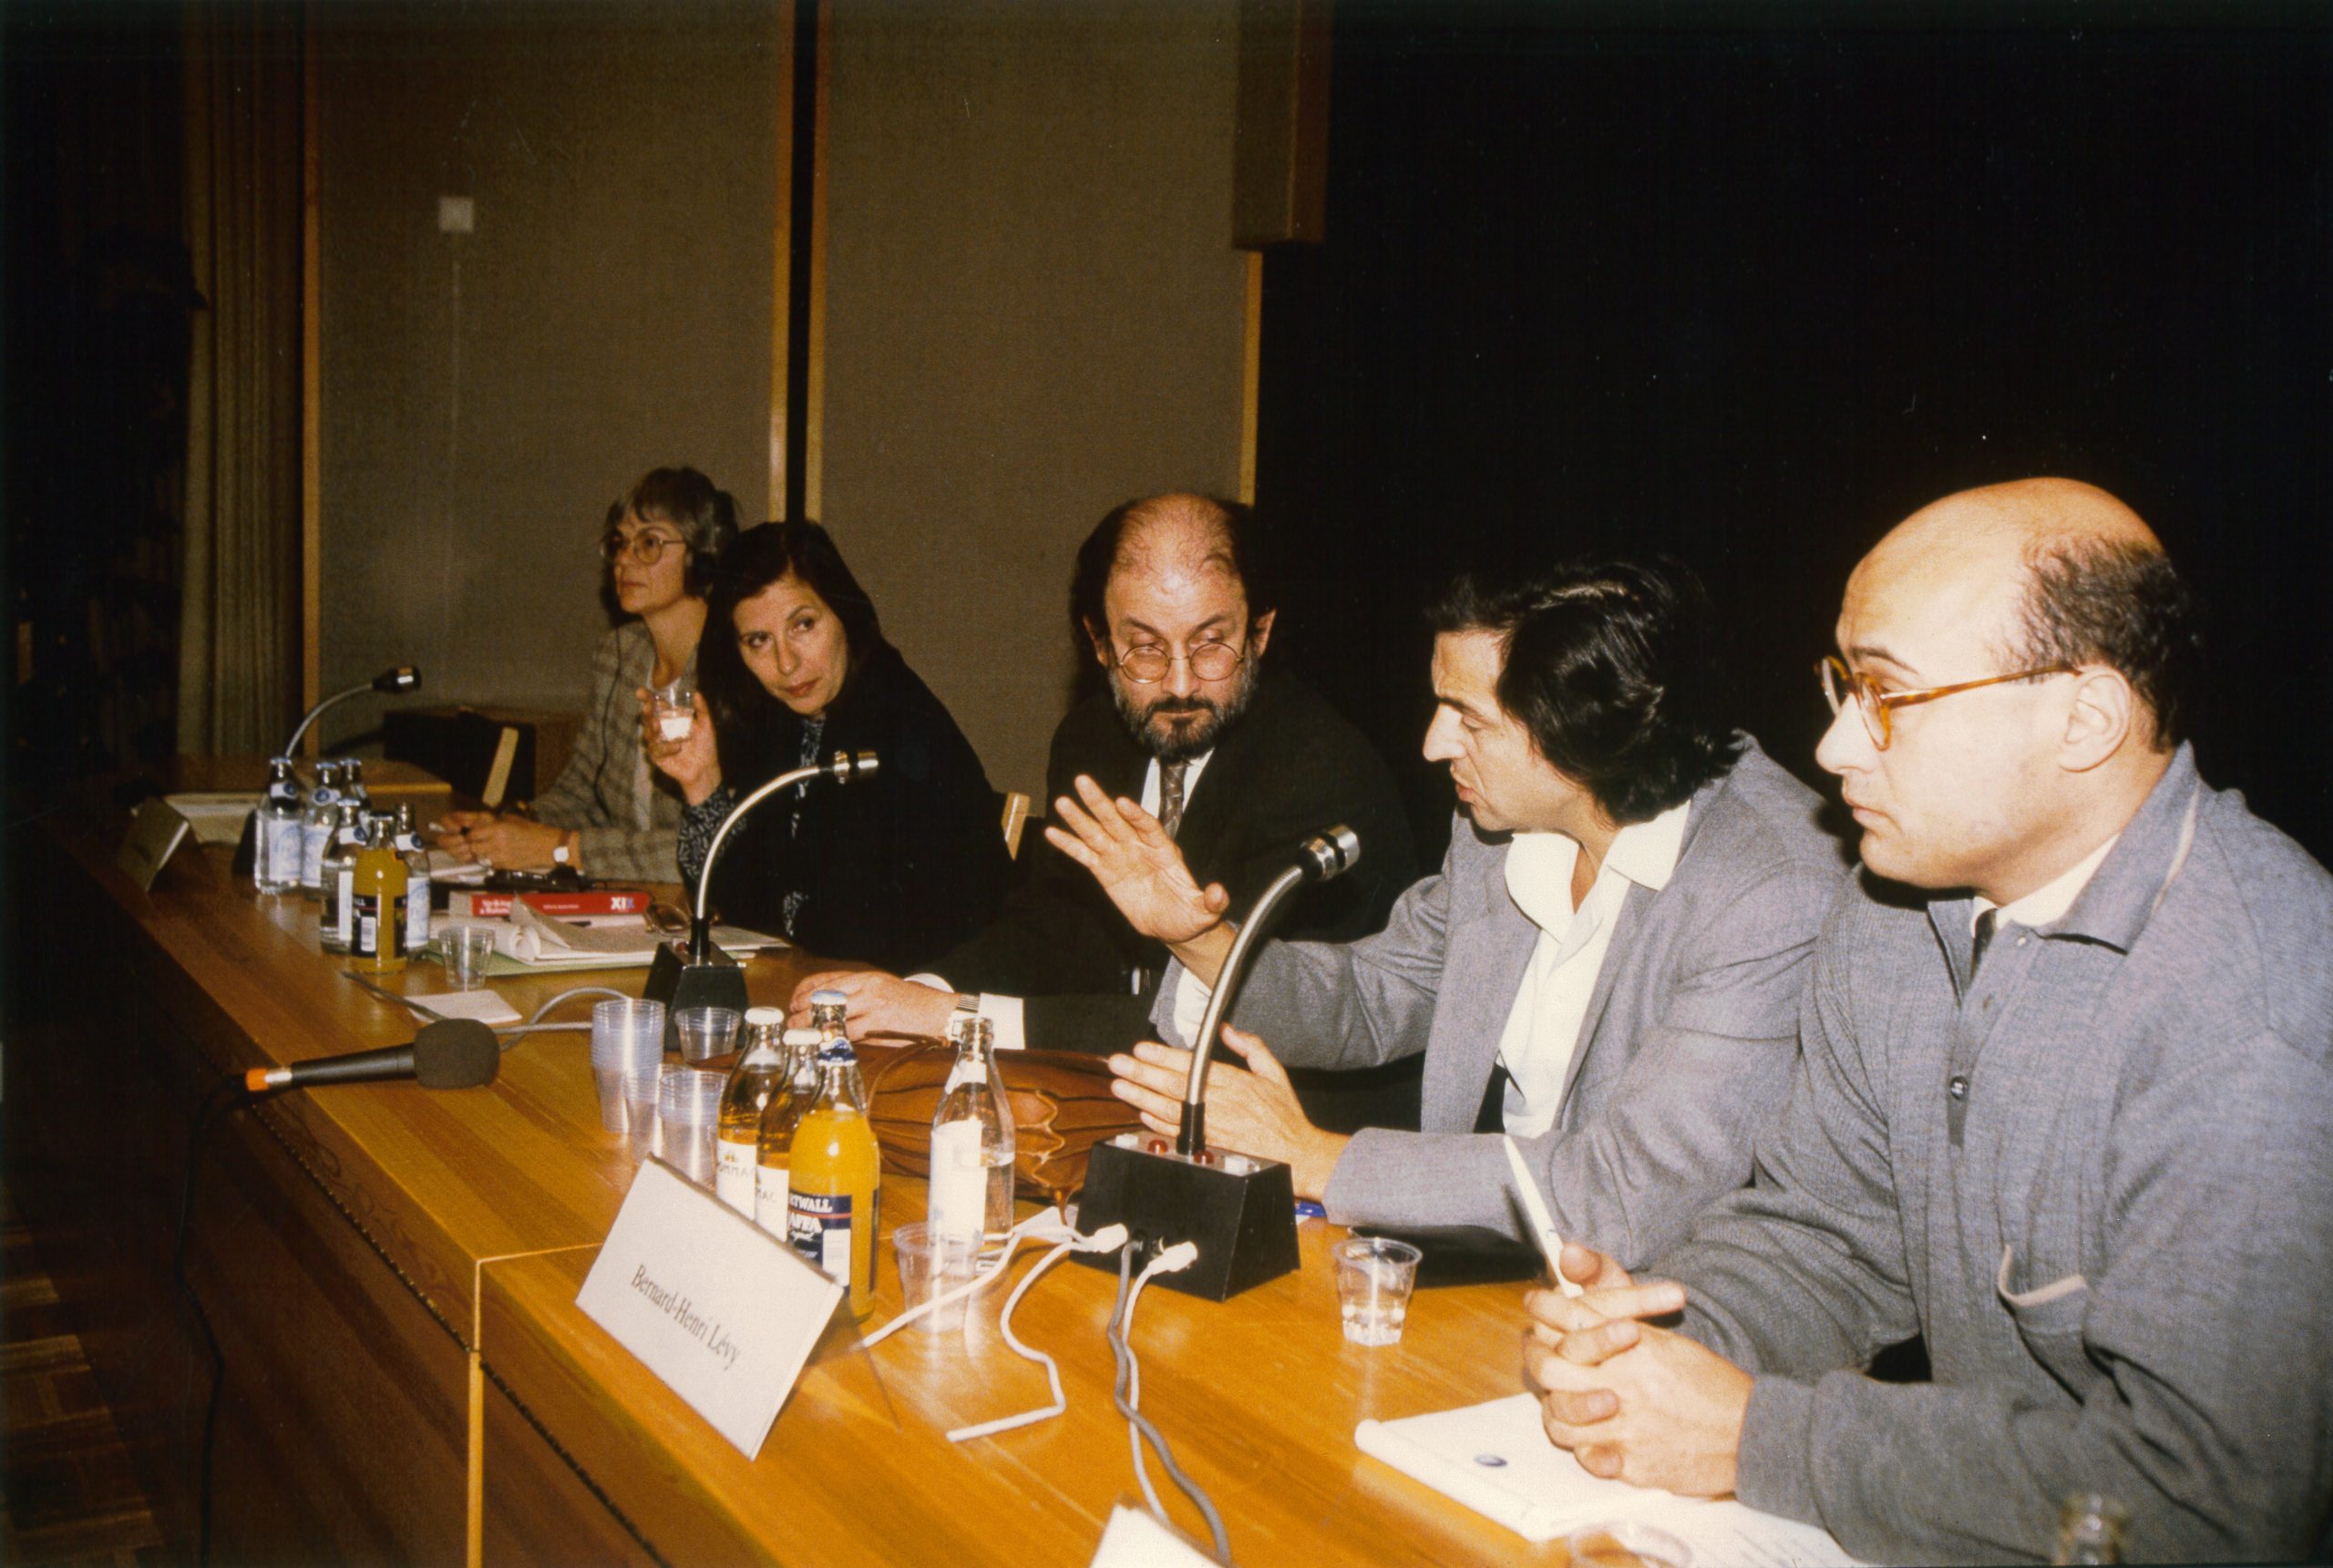 Bernard-Henri Lévy et Salman Rushdie assis derrière une table de conférence. Ils sont entourés, à la même table, par deux femmes et un homme.